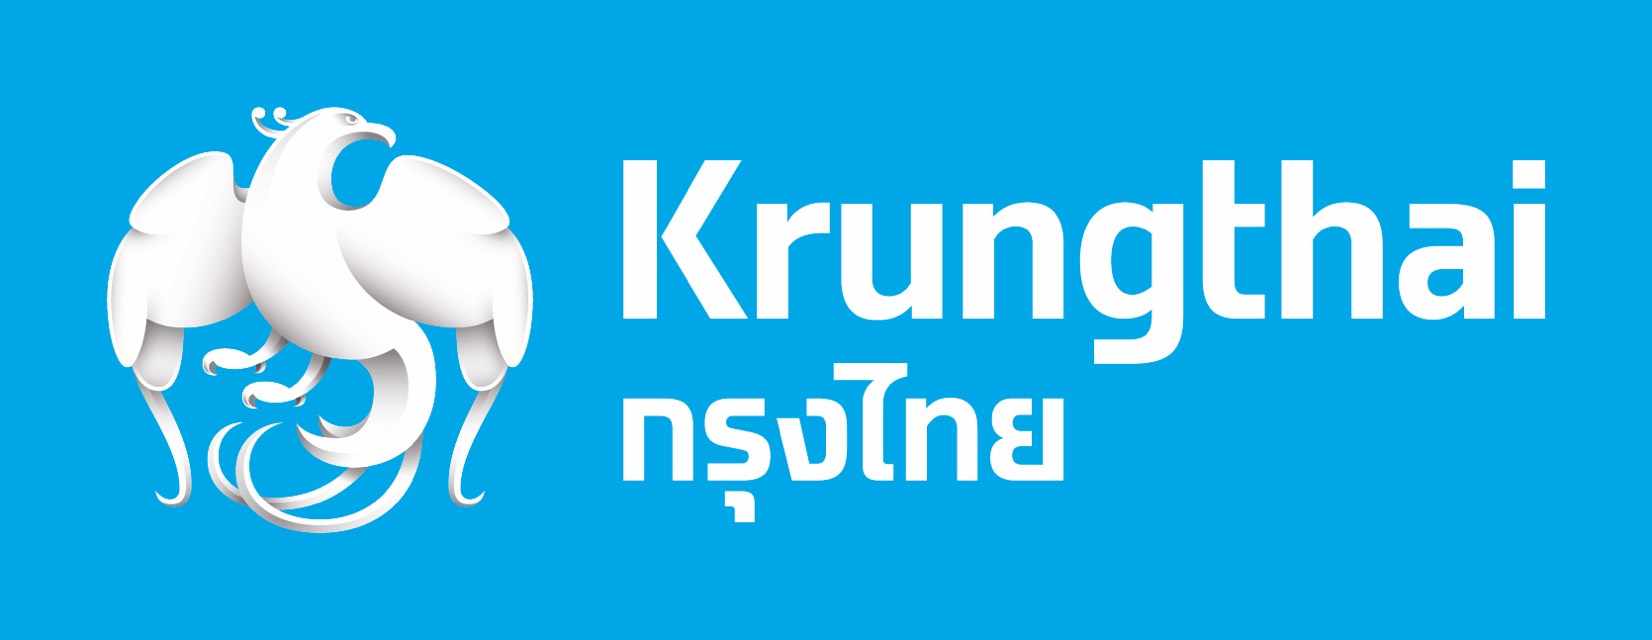 รัฐบาลไทย-ข่าวทำเนียบรัฐบาล- “กรุงไทย”สำรองเงินสด ช่วงเทศกาลสงกรานต์ 30,155  ล้านบาท